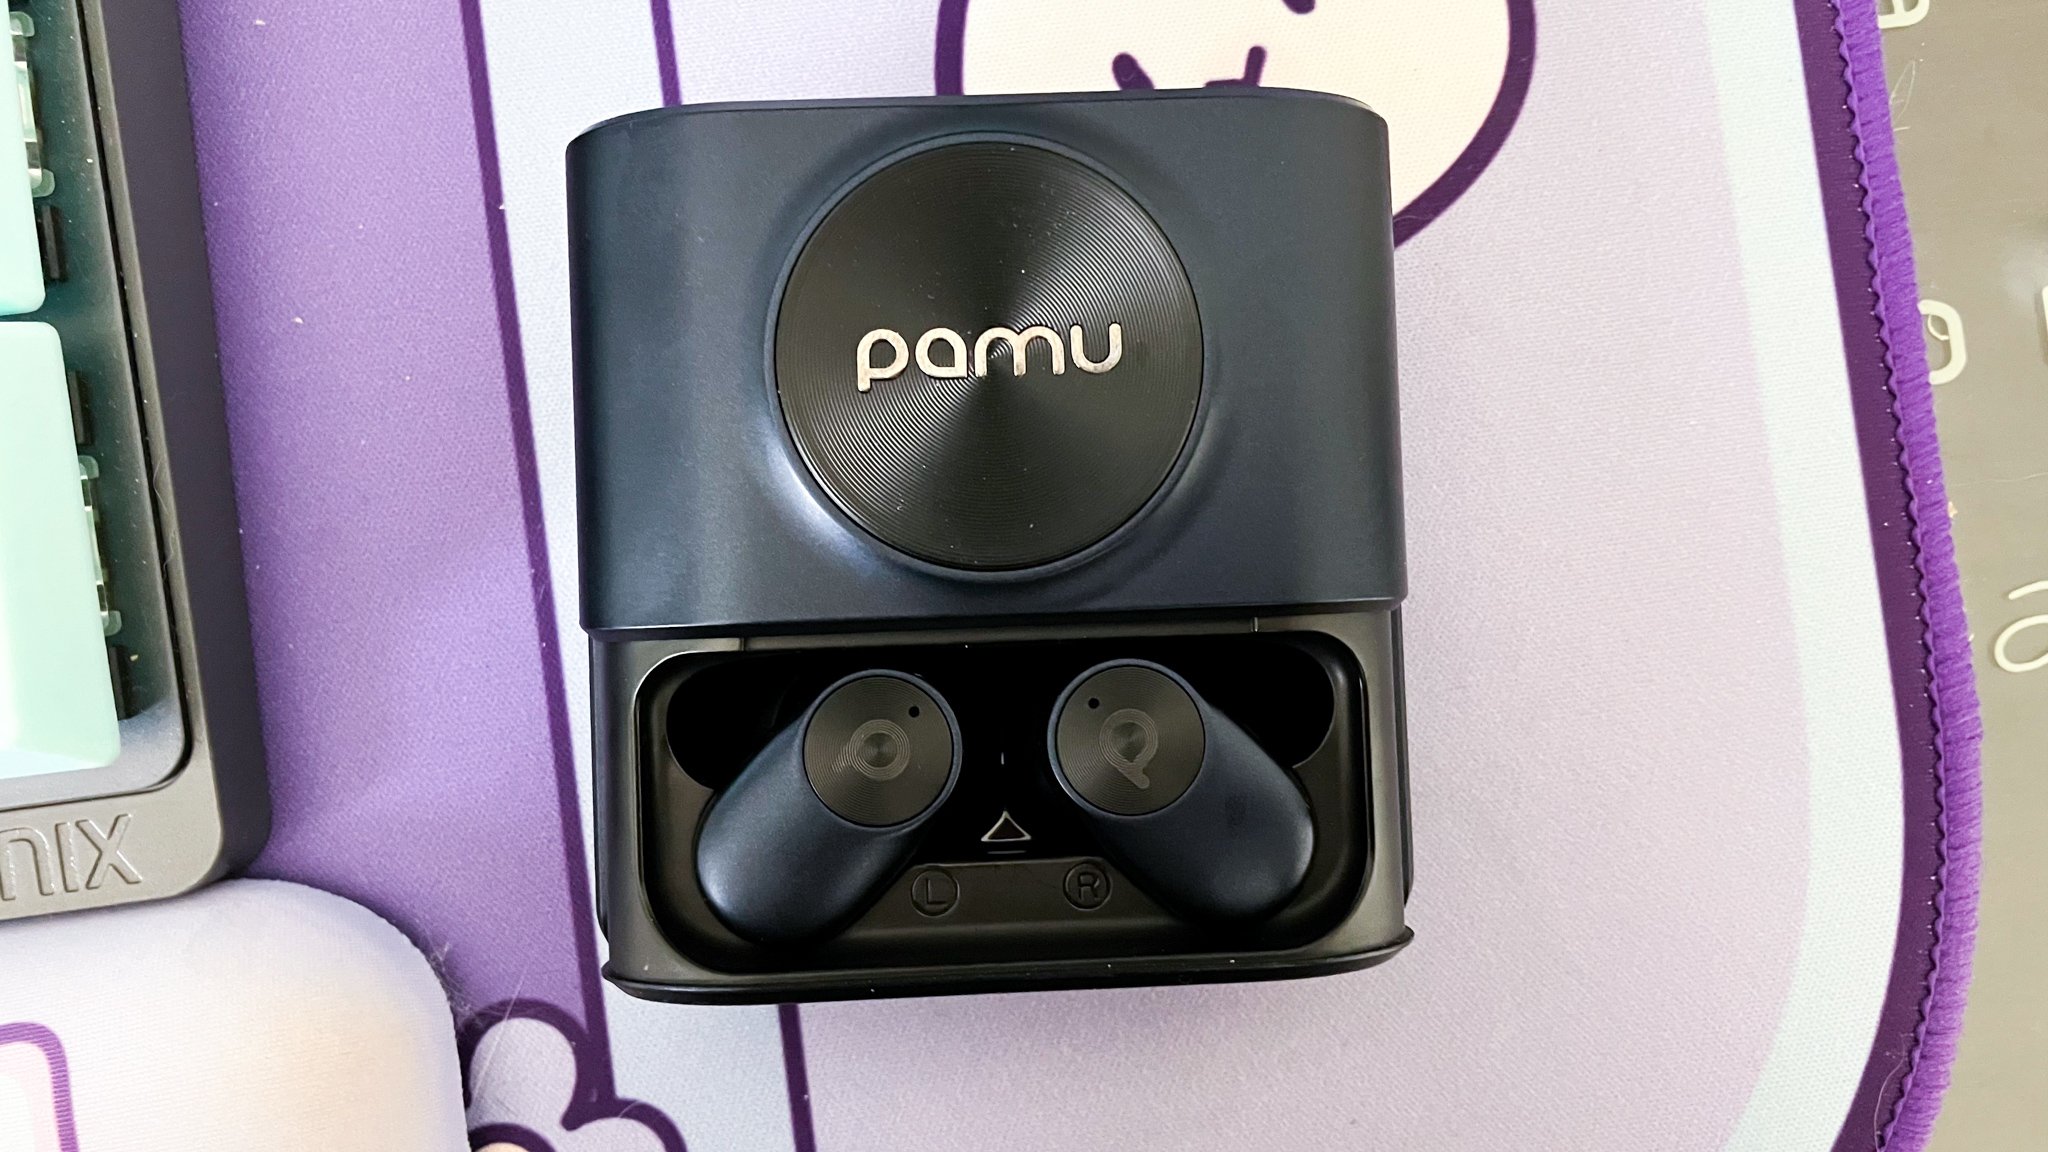 Pamu Earbuds in Case.jpg